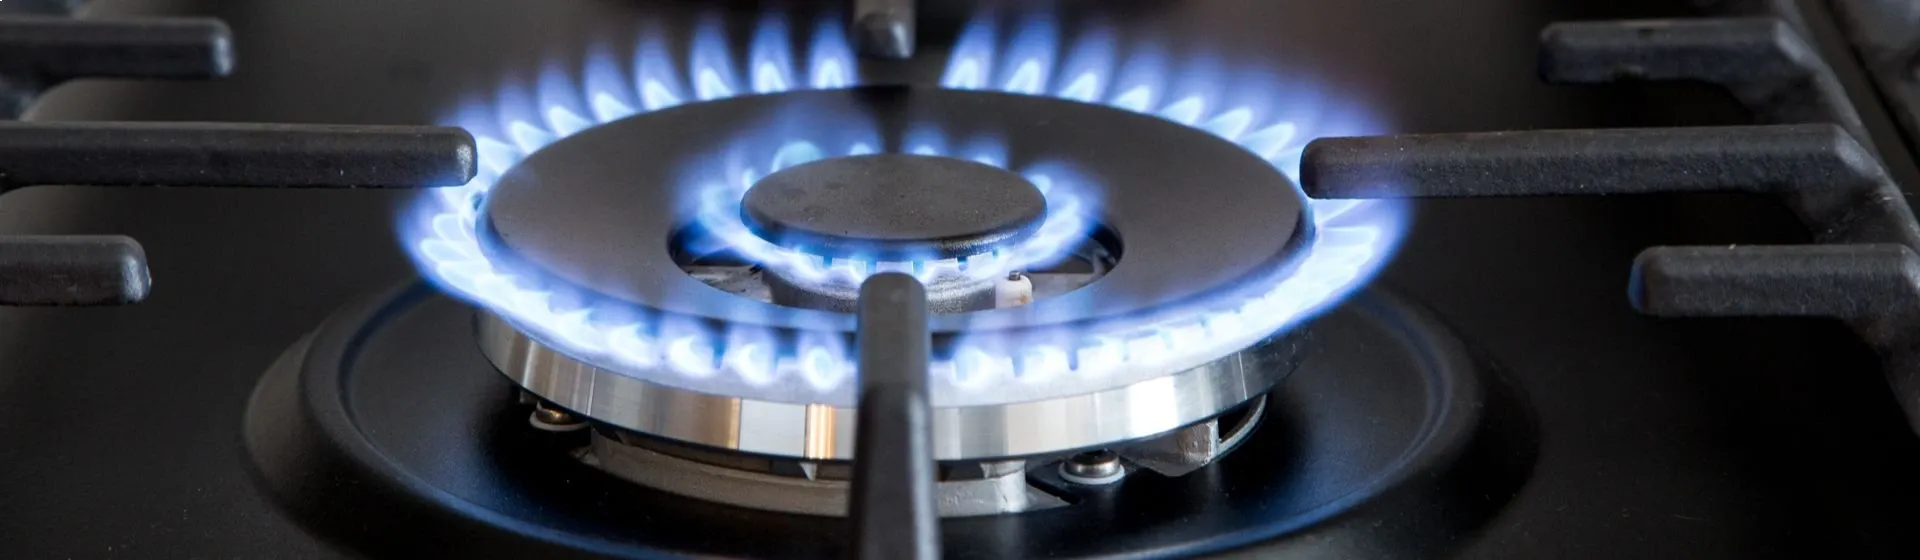 Capa do post: Todos os fogões funcionam a gás encanado?